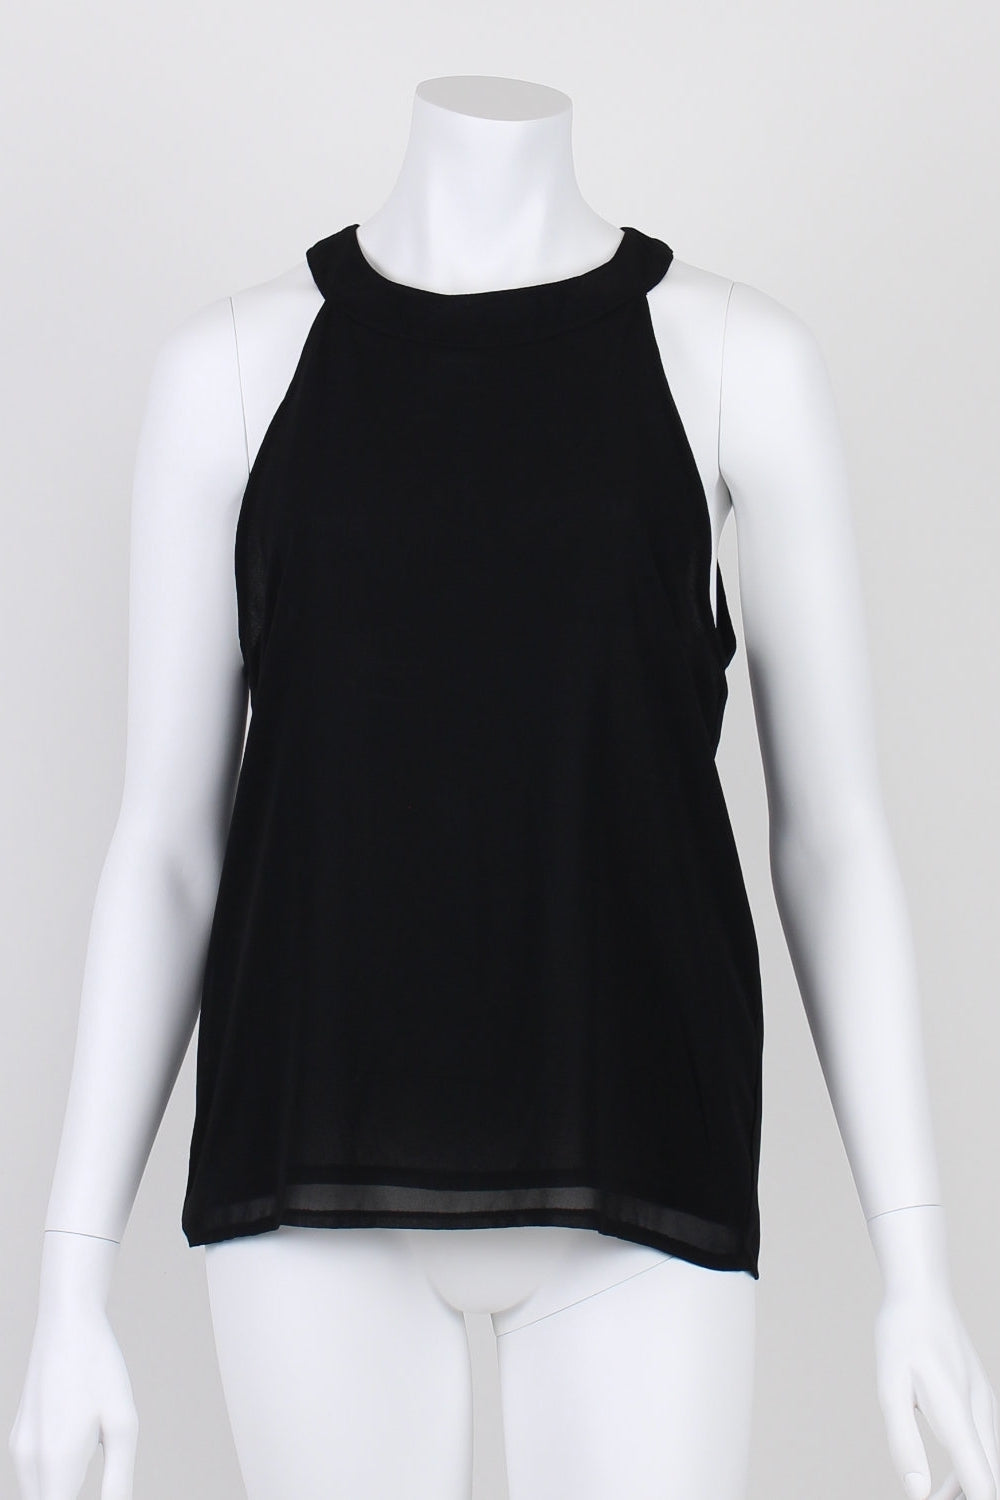 Rosebullet Black Sleeveless Sheer Shirt 12